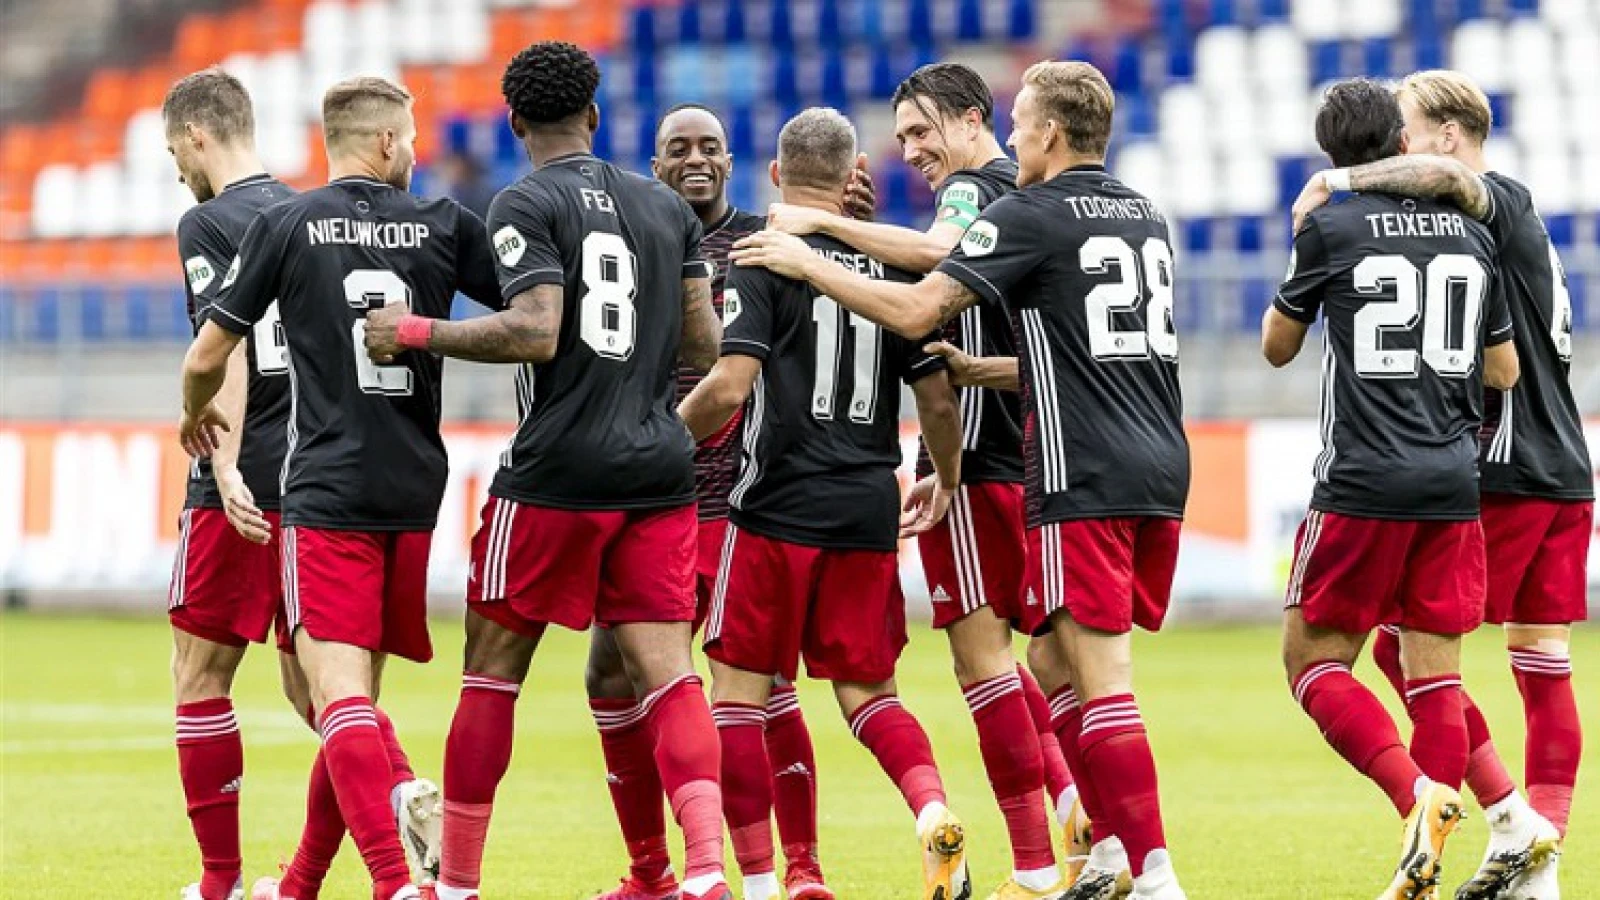 STAND | Feyenoord koploper na puntenverlies Ajax